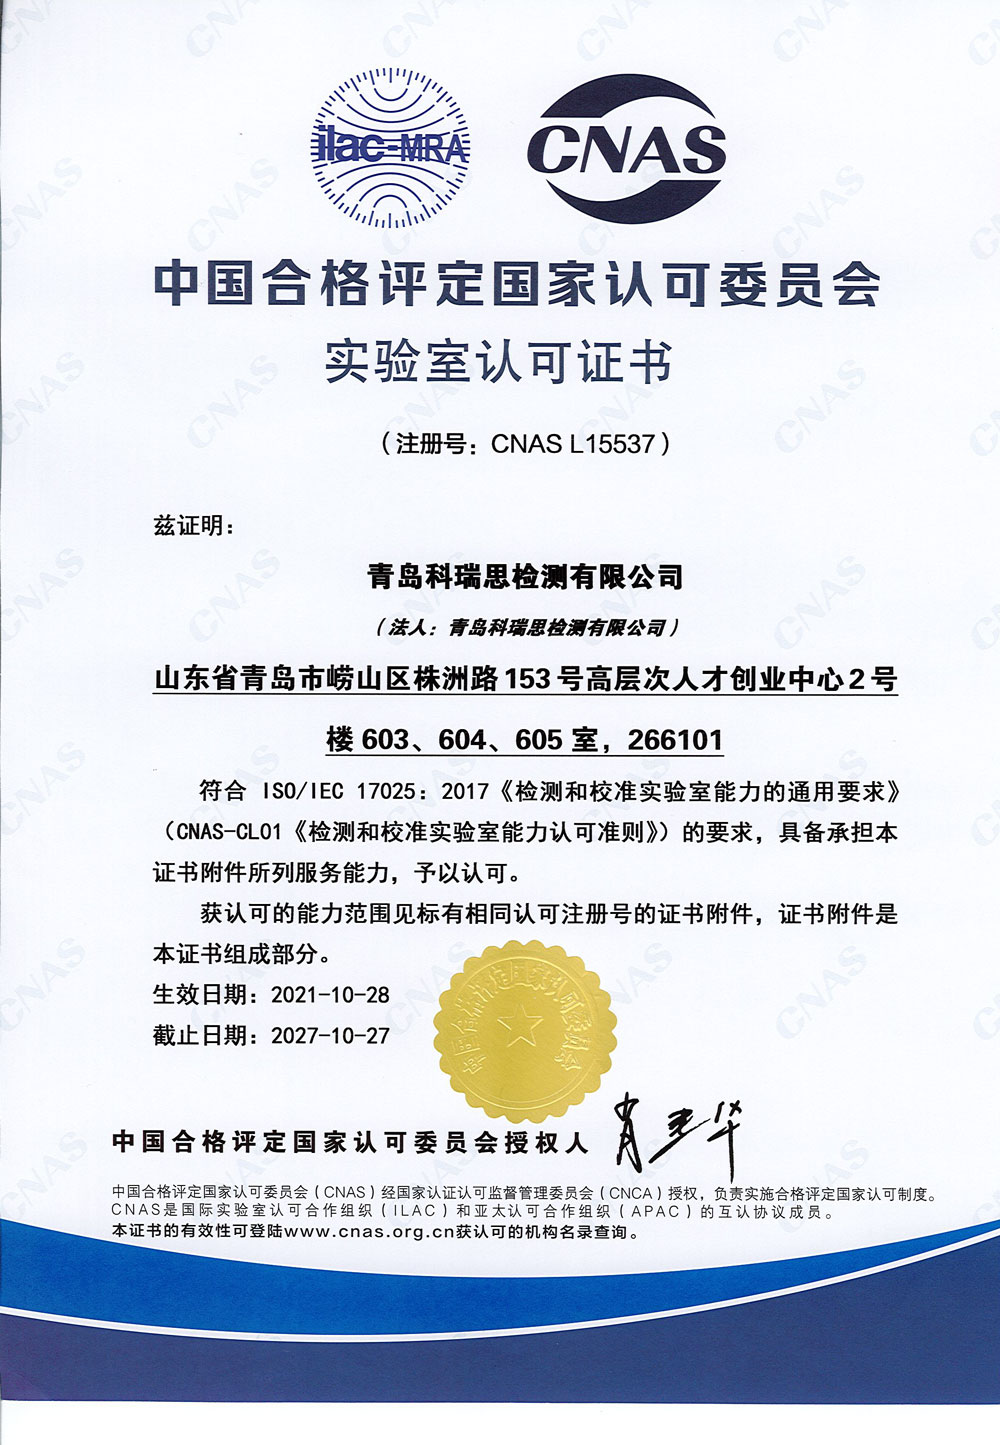 CNAS-ISO17025证书-中文2021.10.28-2027.10.jpg